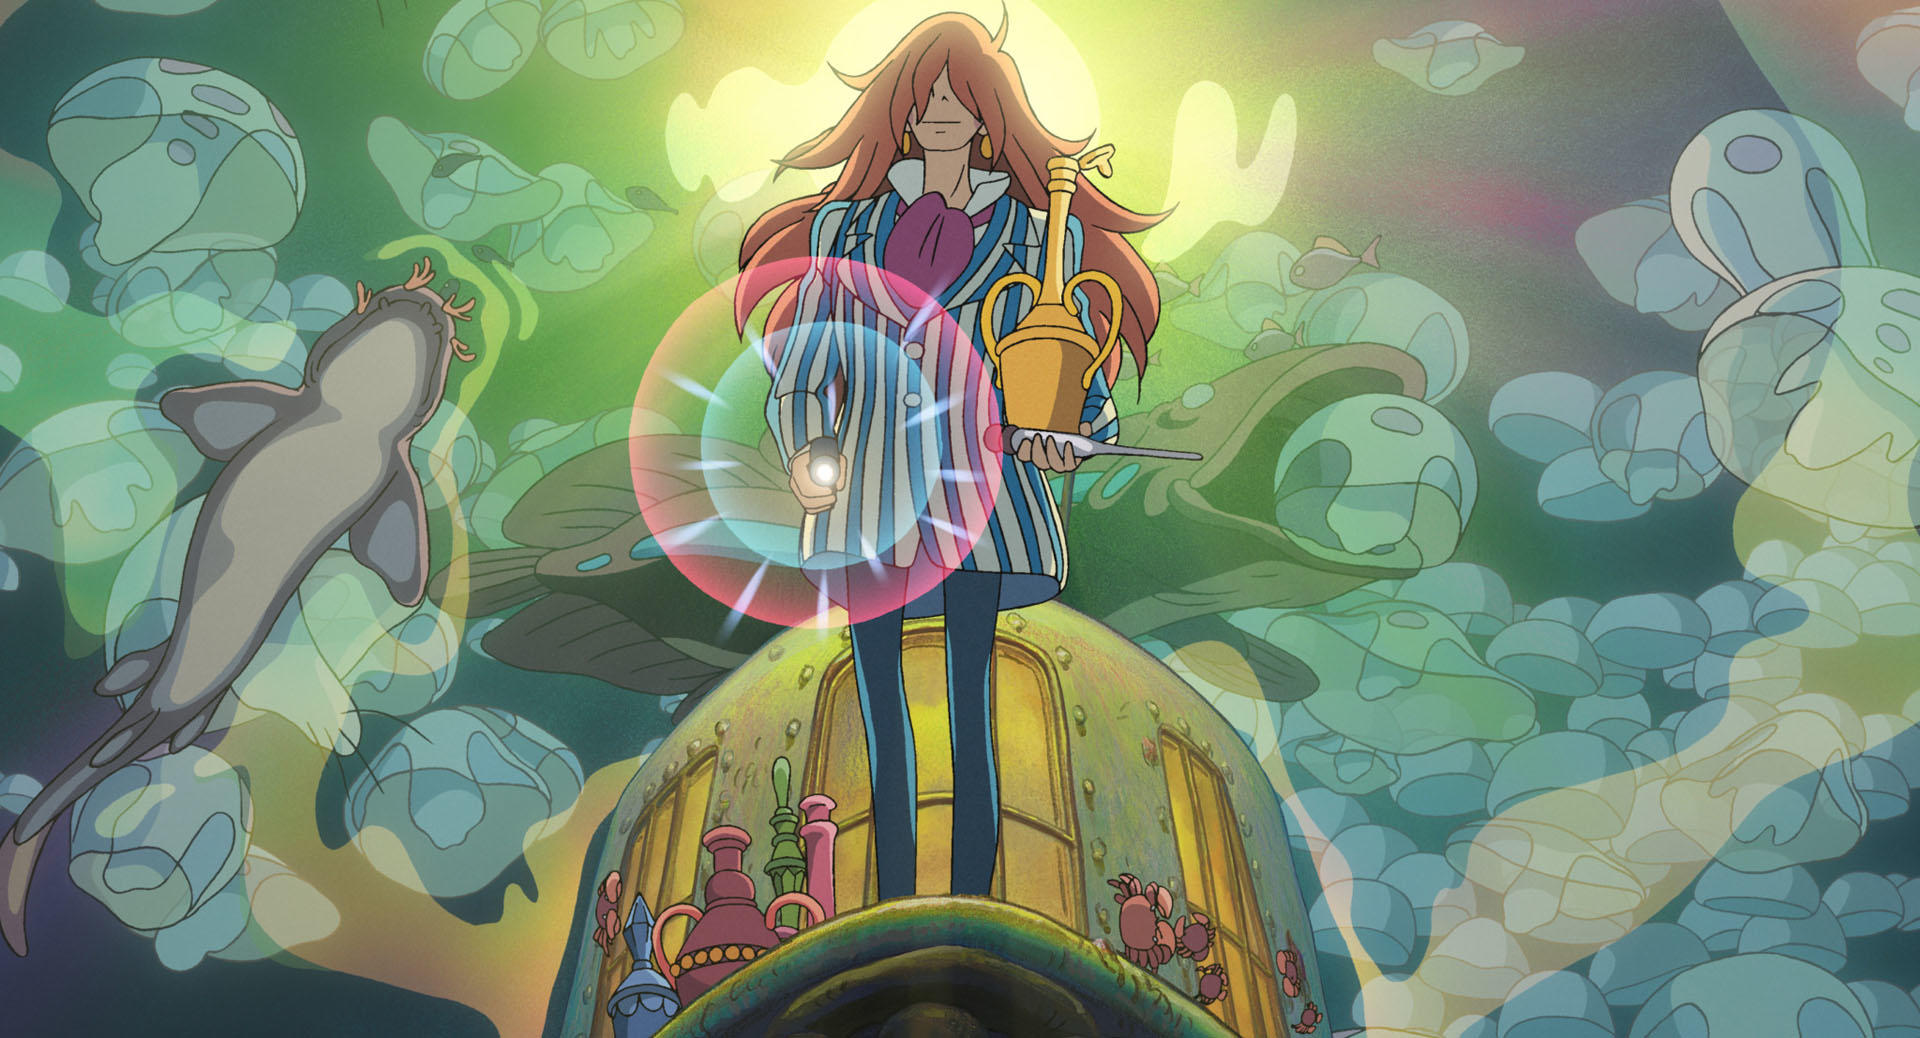 藤本是海中的魔法師，也是波妞的爸爸，以魔法守護海洋、創造生命。